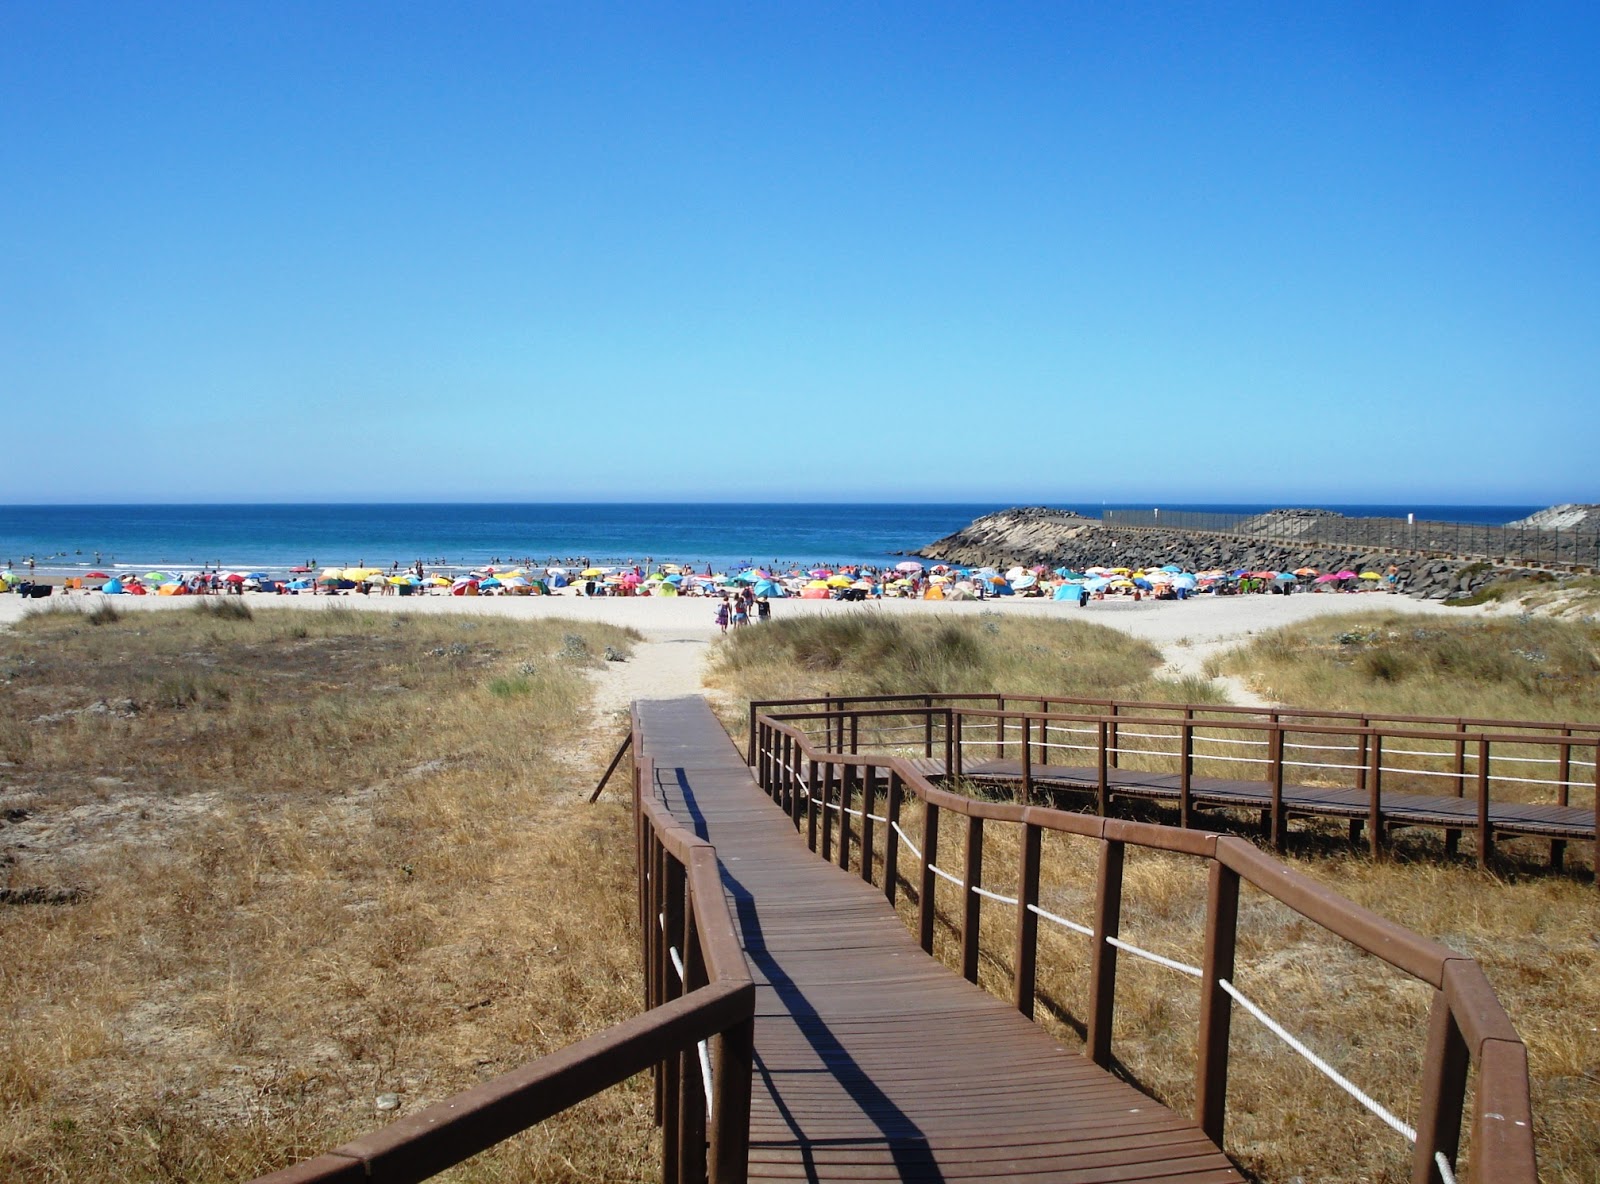 Praia de Sao Torpes'in fotoğrafı geniş plaj ile birlikte